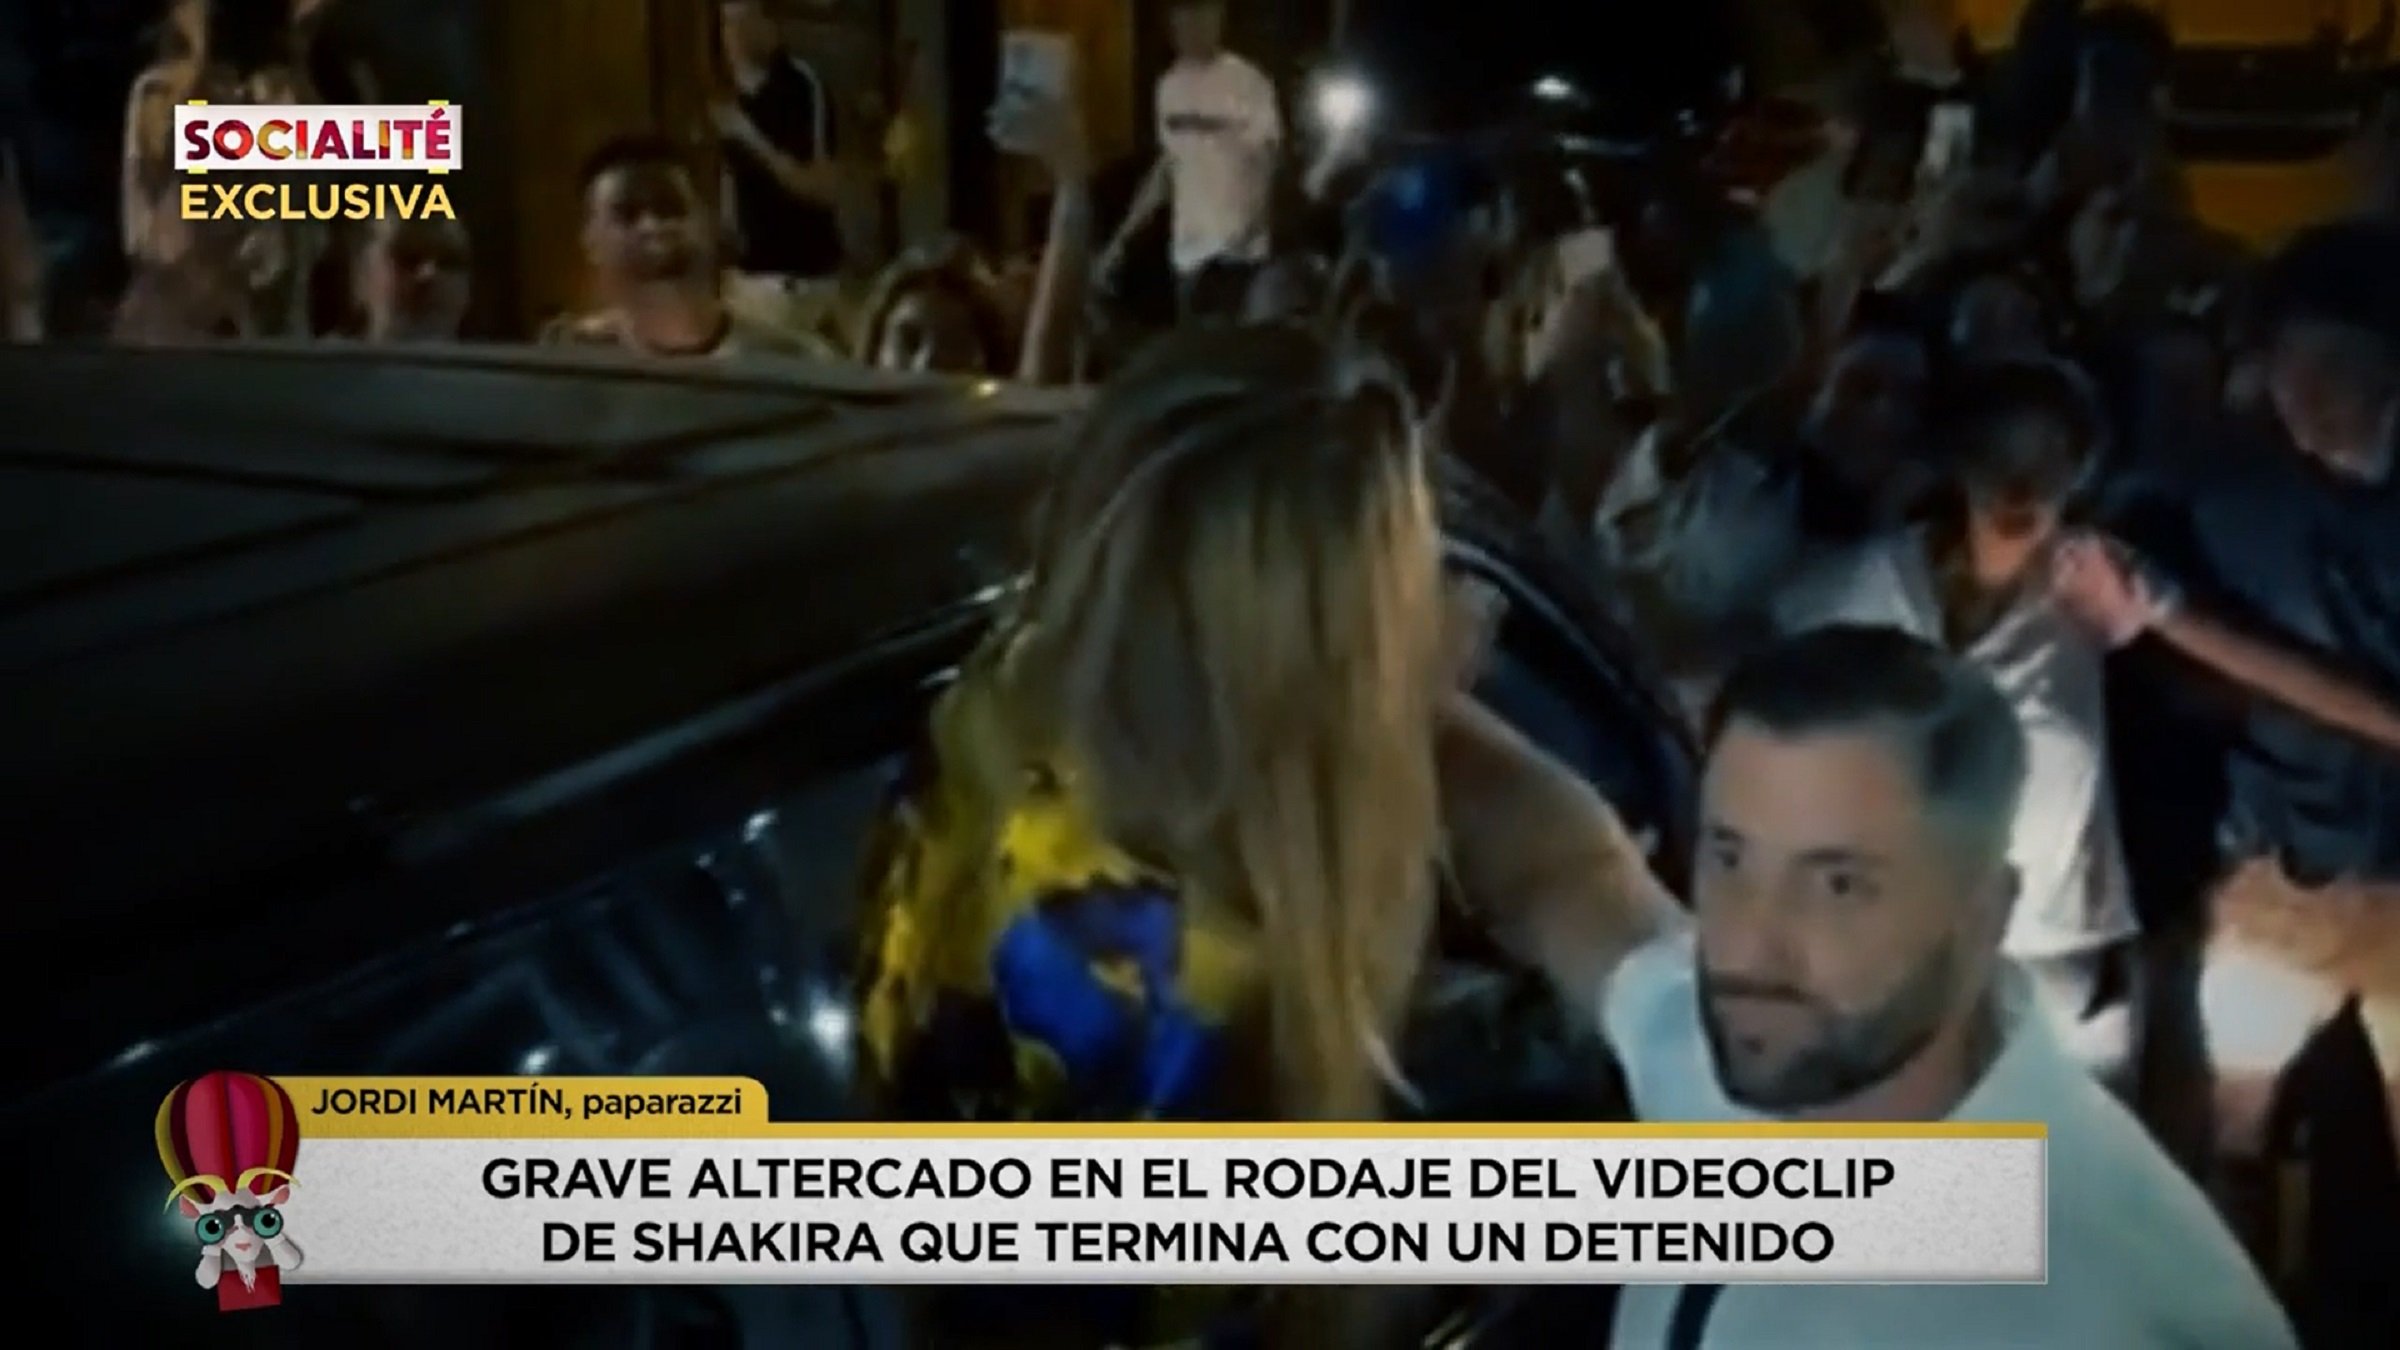 Tensión en Barcelona, Shakira desencajada, Mossos y gritos de "¡Me están pegando!"